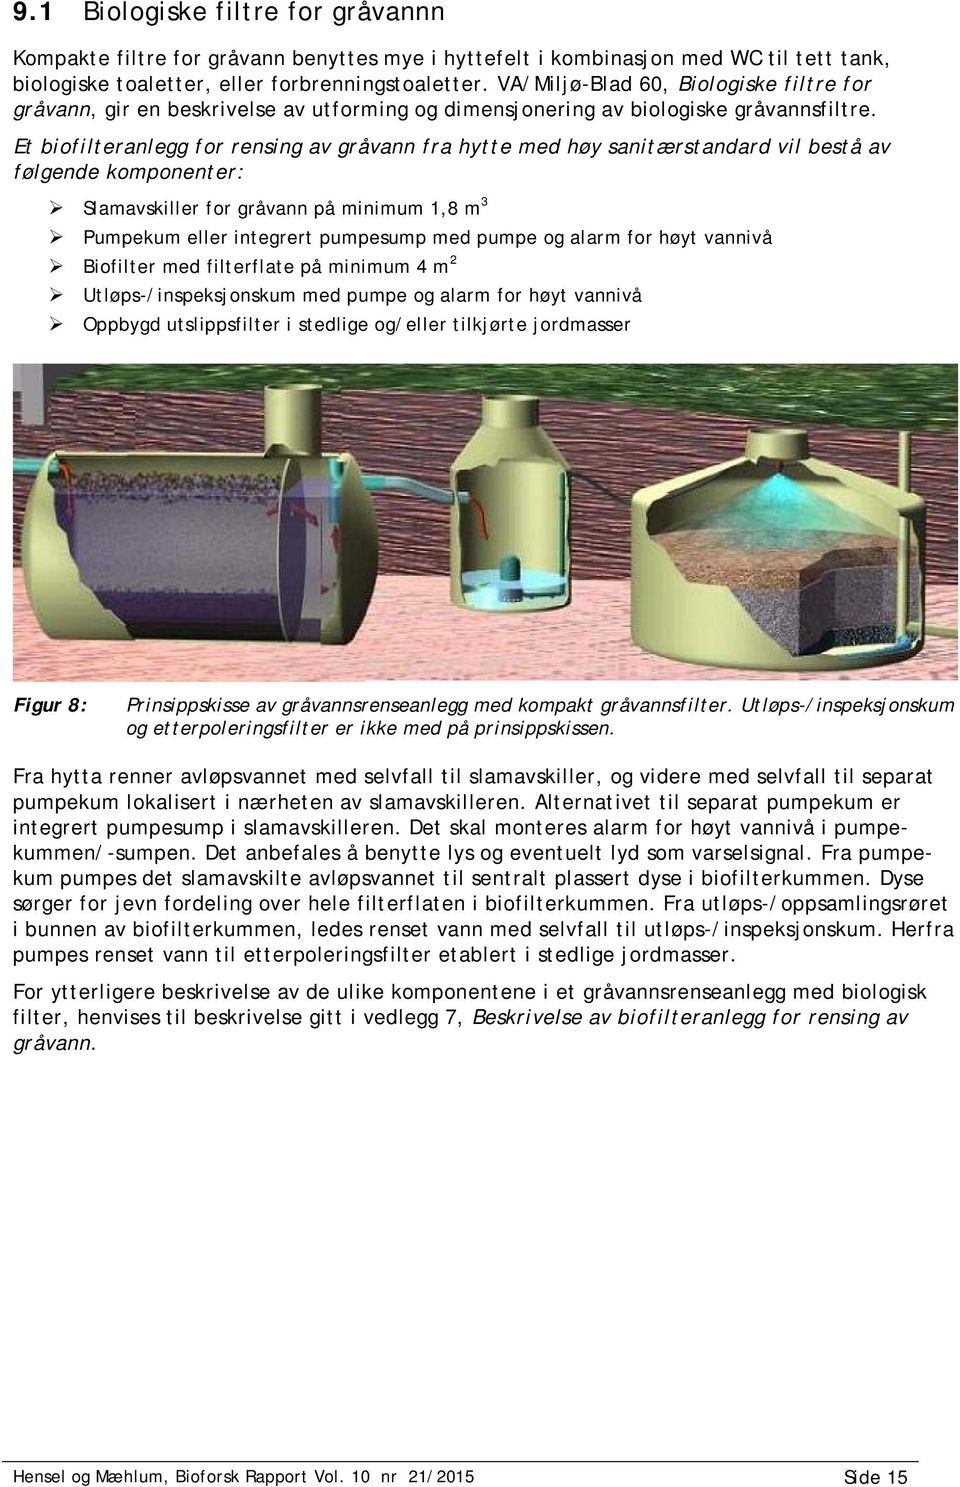 Et biofilteranlegg for rensing av gråvann fra hytte med høy sanitærstandard vil bestå av følgende komponenter: Slamavskiller for gråvann på minimum 1,8 m 3 Pumpekum eller integrert pumpesump med